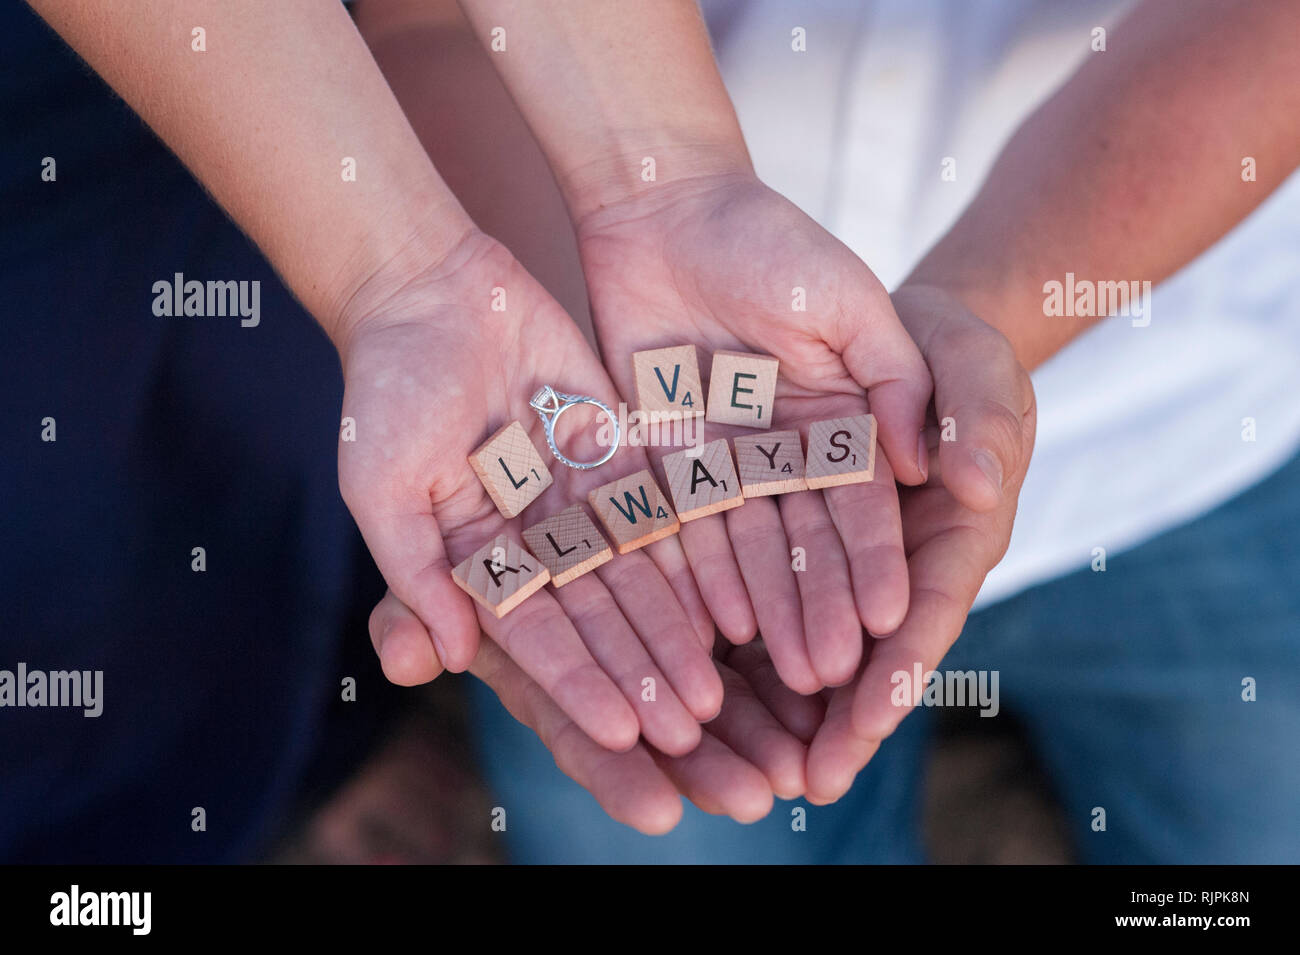 Close-up horizontale d'un couple de fiancés's hands cupped autour de l'autre, de la tenue des pièces de scrabble l'orthographe les mots "l'amour toujours" avec l'anneau. Banque D'Images